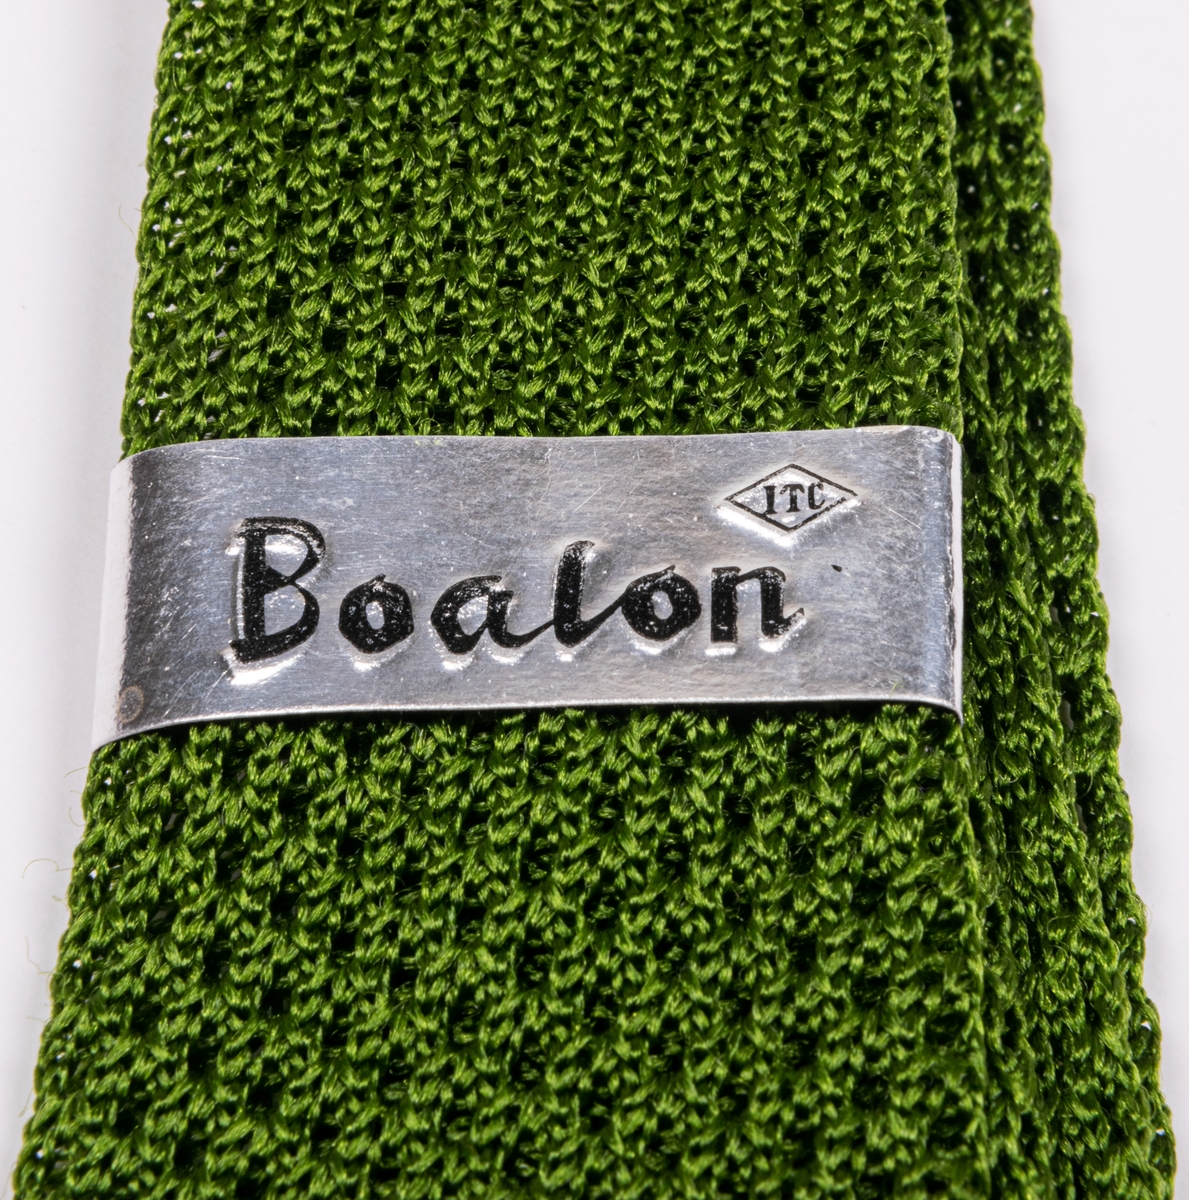 Nylonslips av grön trikåväv. Nedtill en etikett med text: Boalon Nylon made in Japan.